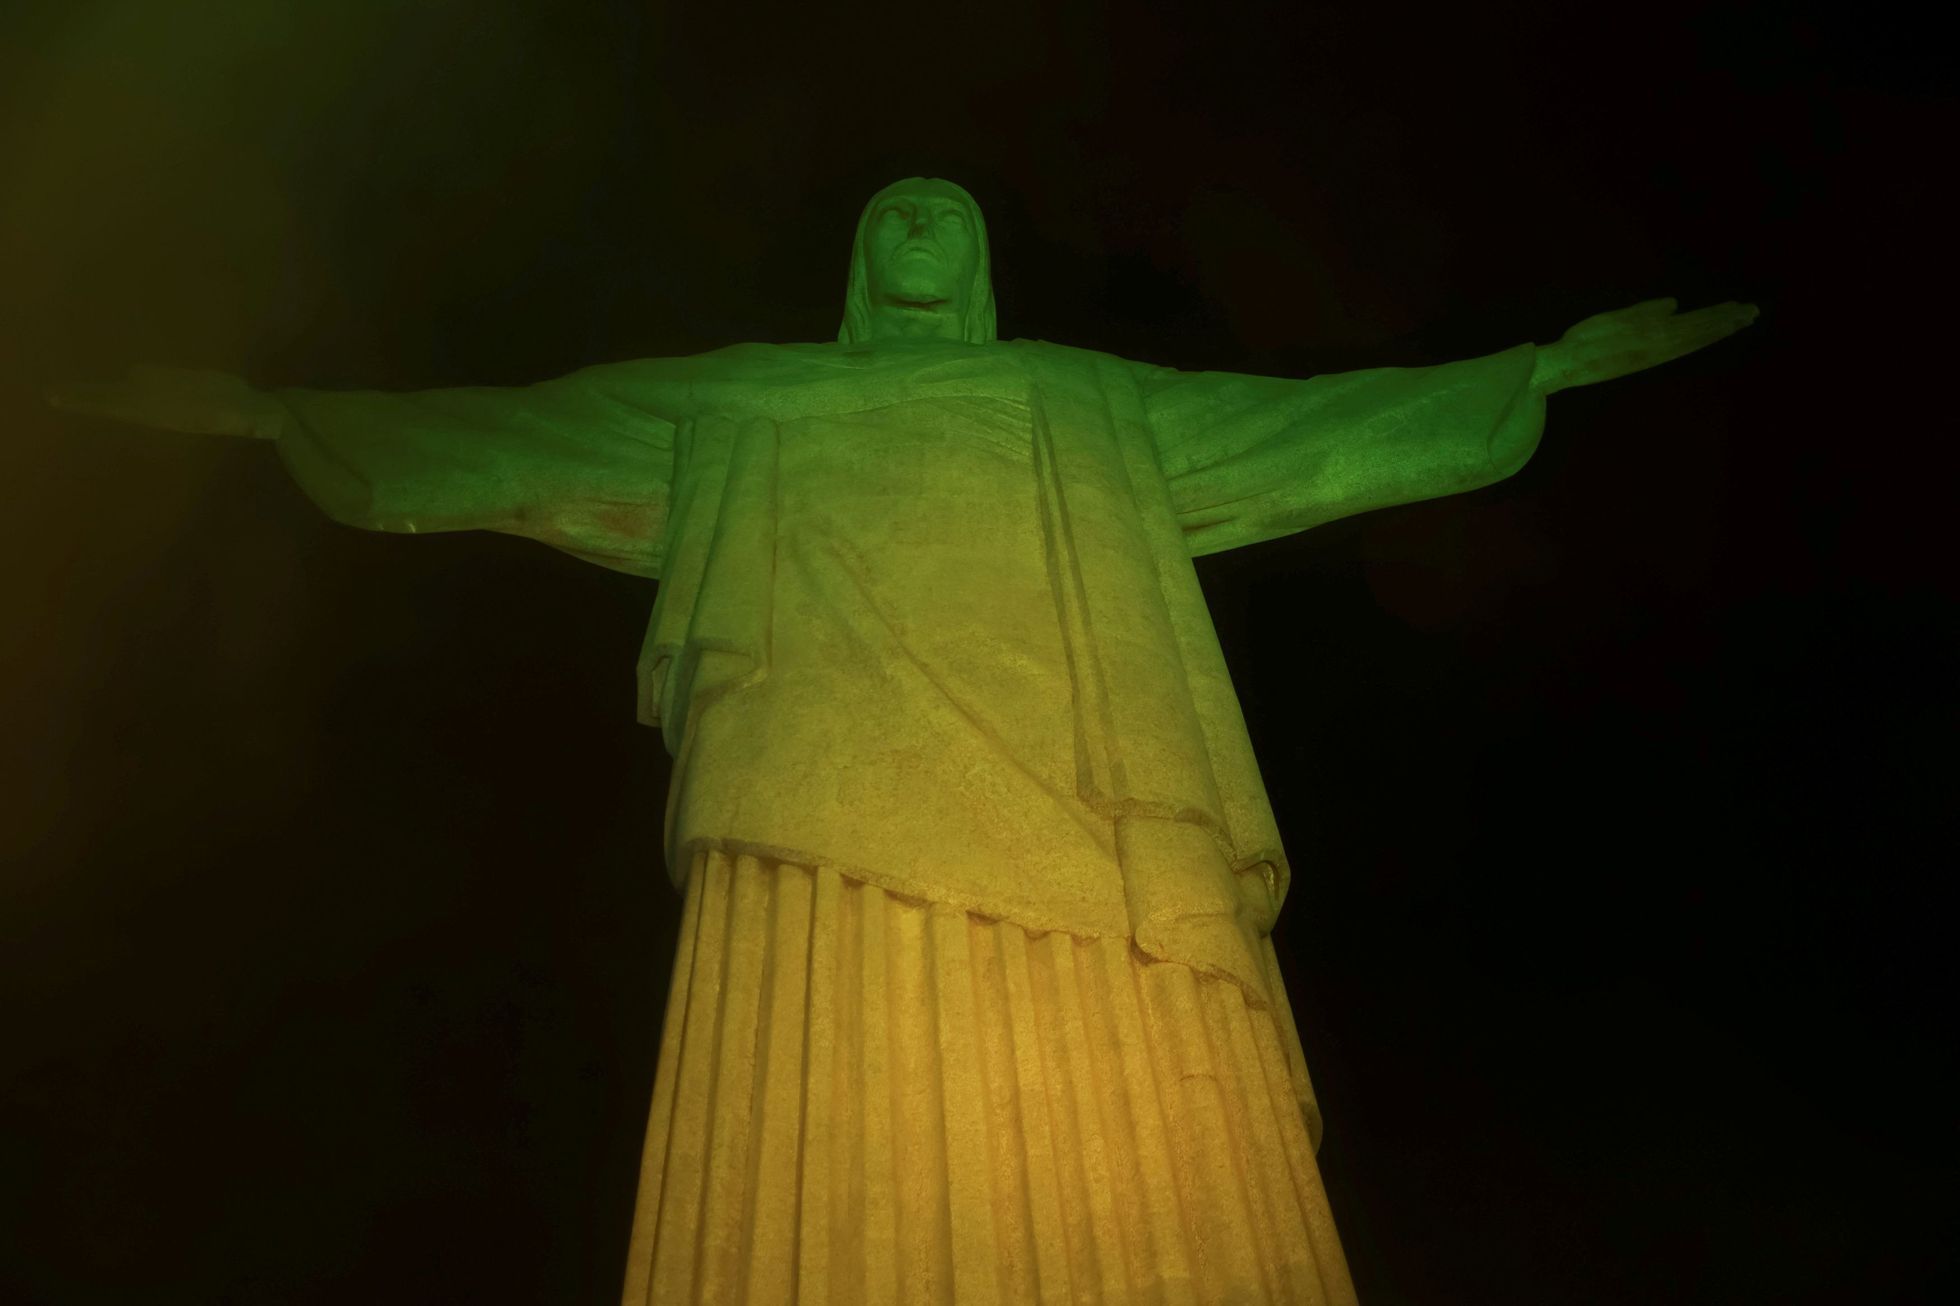 Fanoušci truchlí nad smrtí Pelého - osvětlená socha Ježíše v Rio de Janeiro